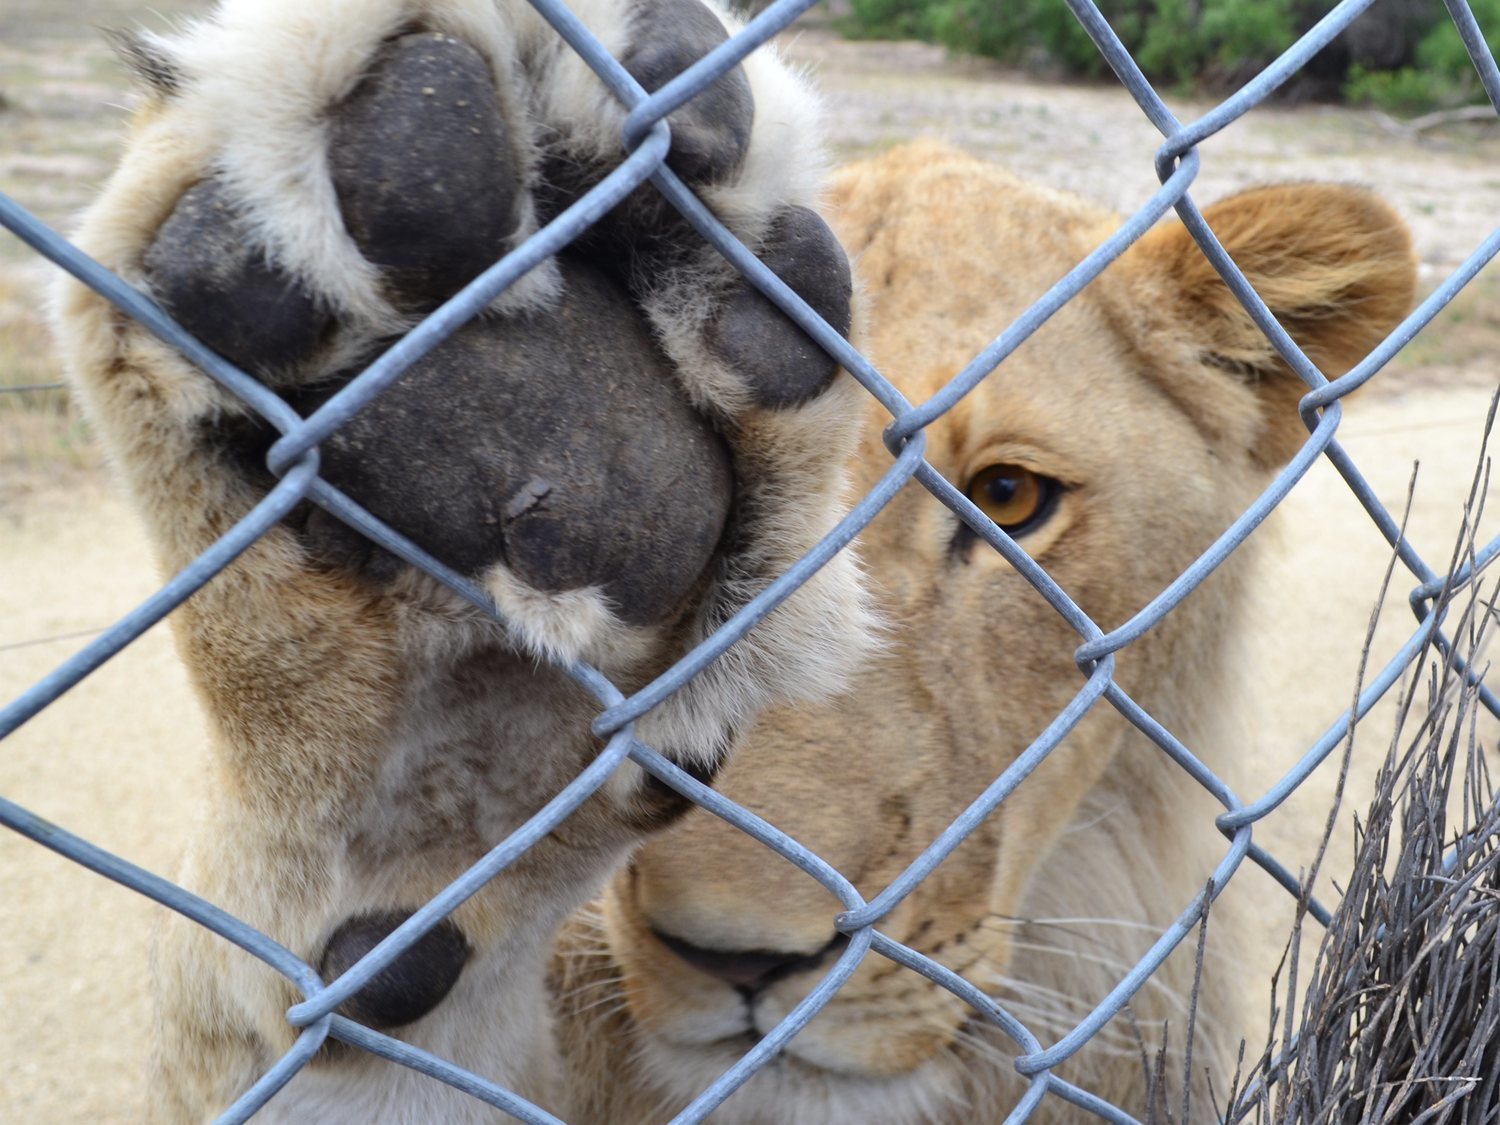 Un zoo amputa las garras a una leona para convertirla en un juguete para los visitantes